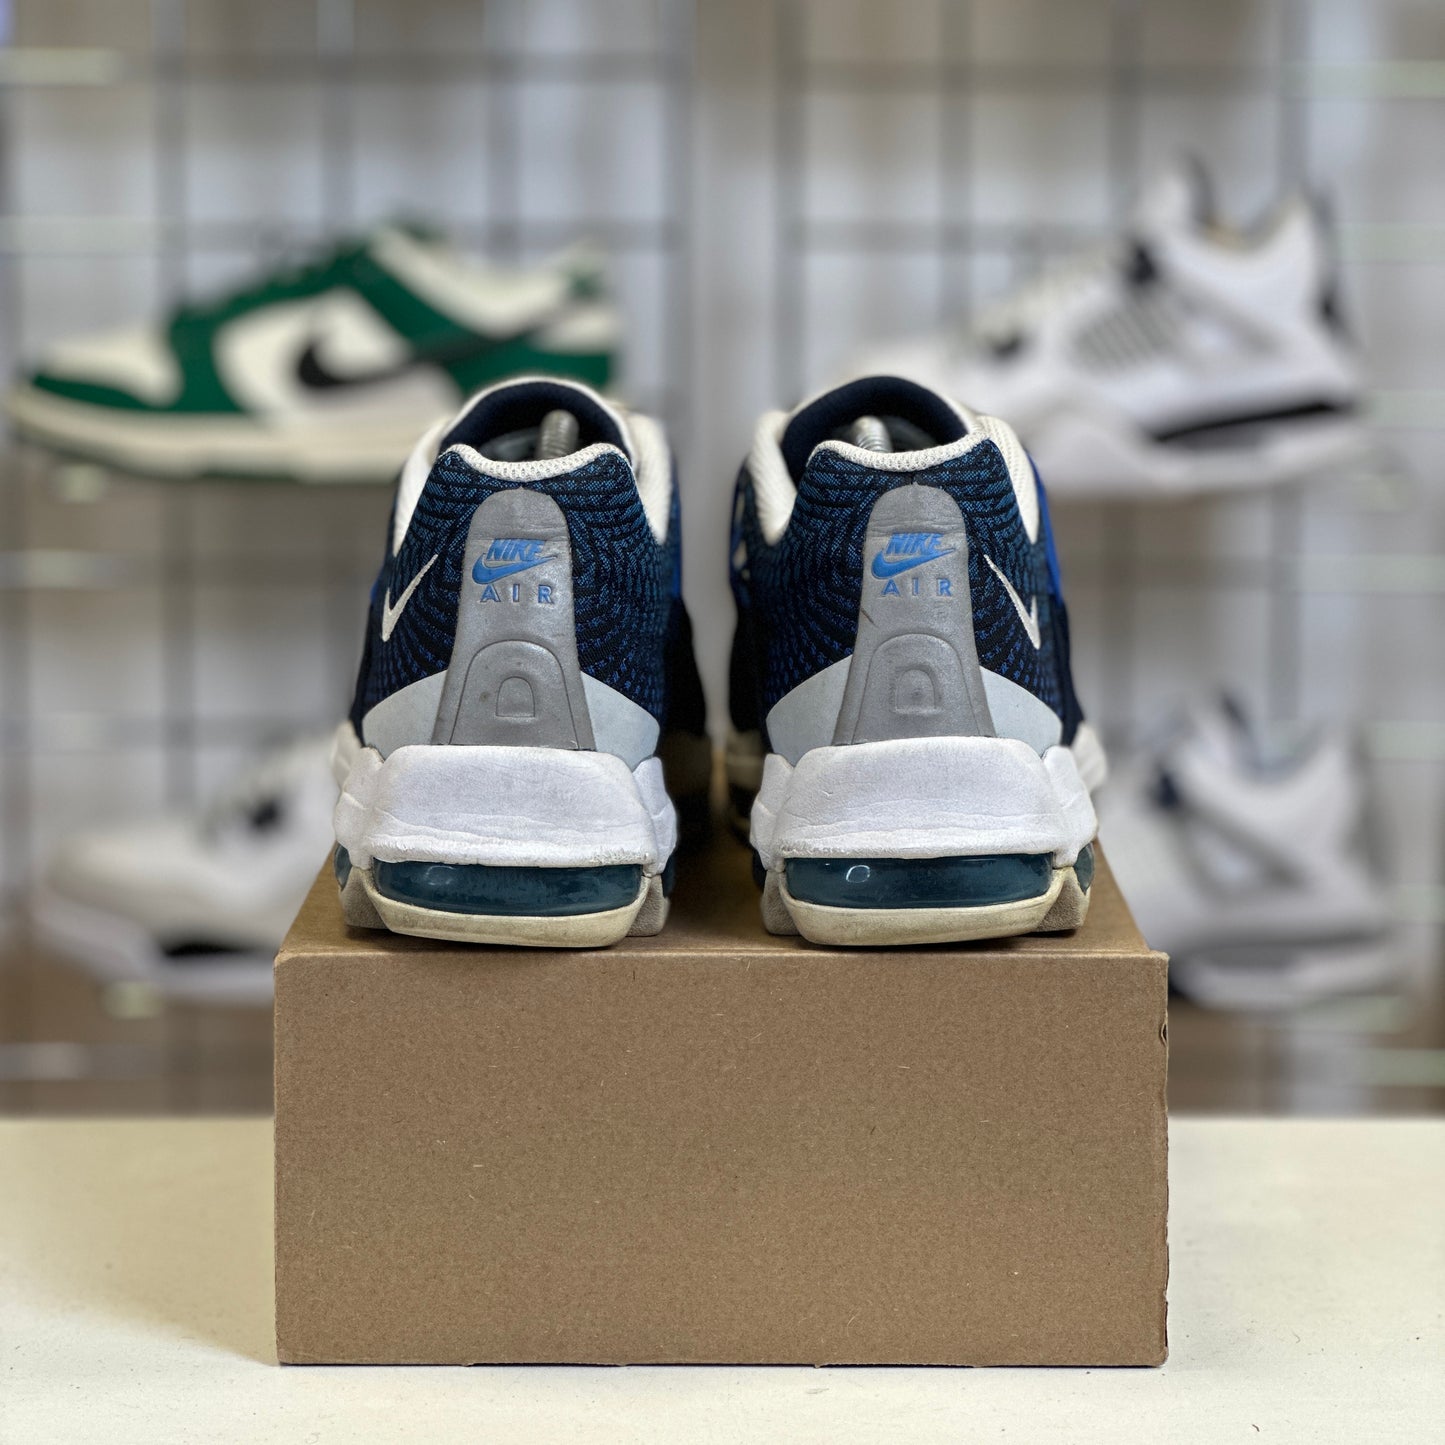 Nike Air Max 95 Jacquard 'Blue' UK8.5 (No Box)